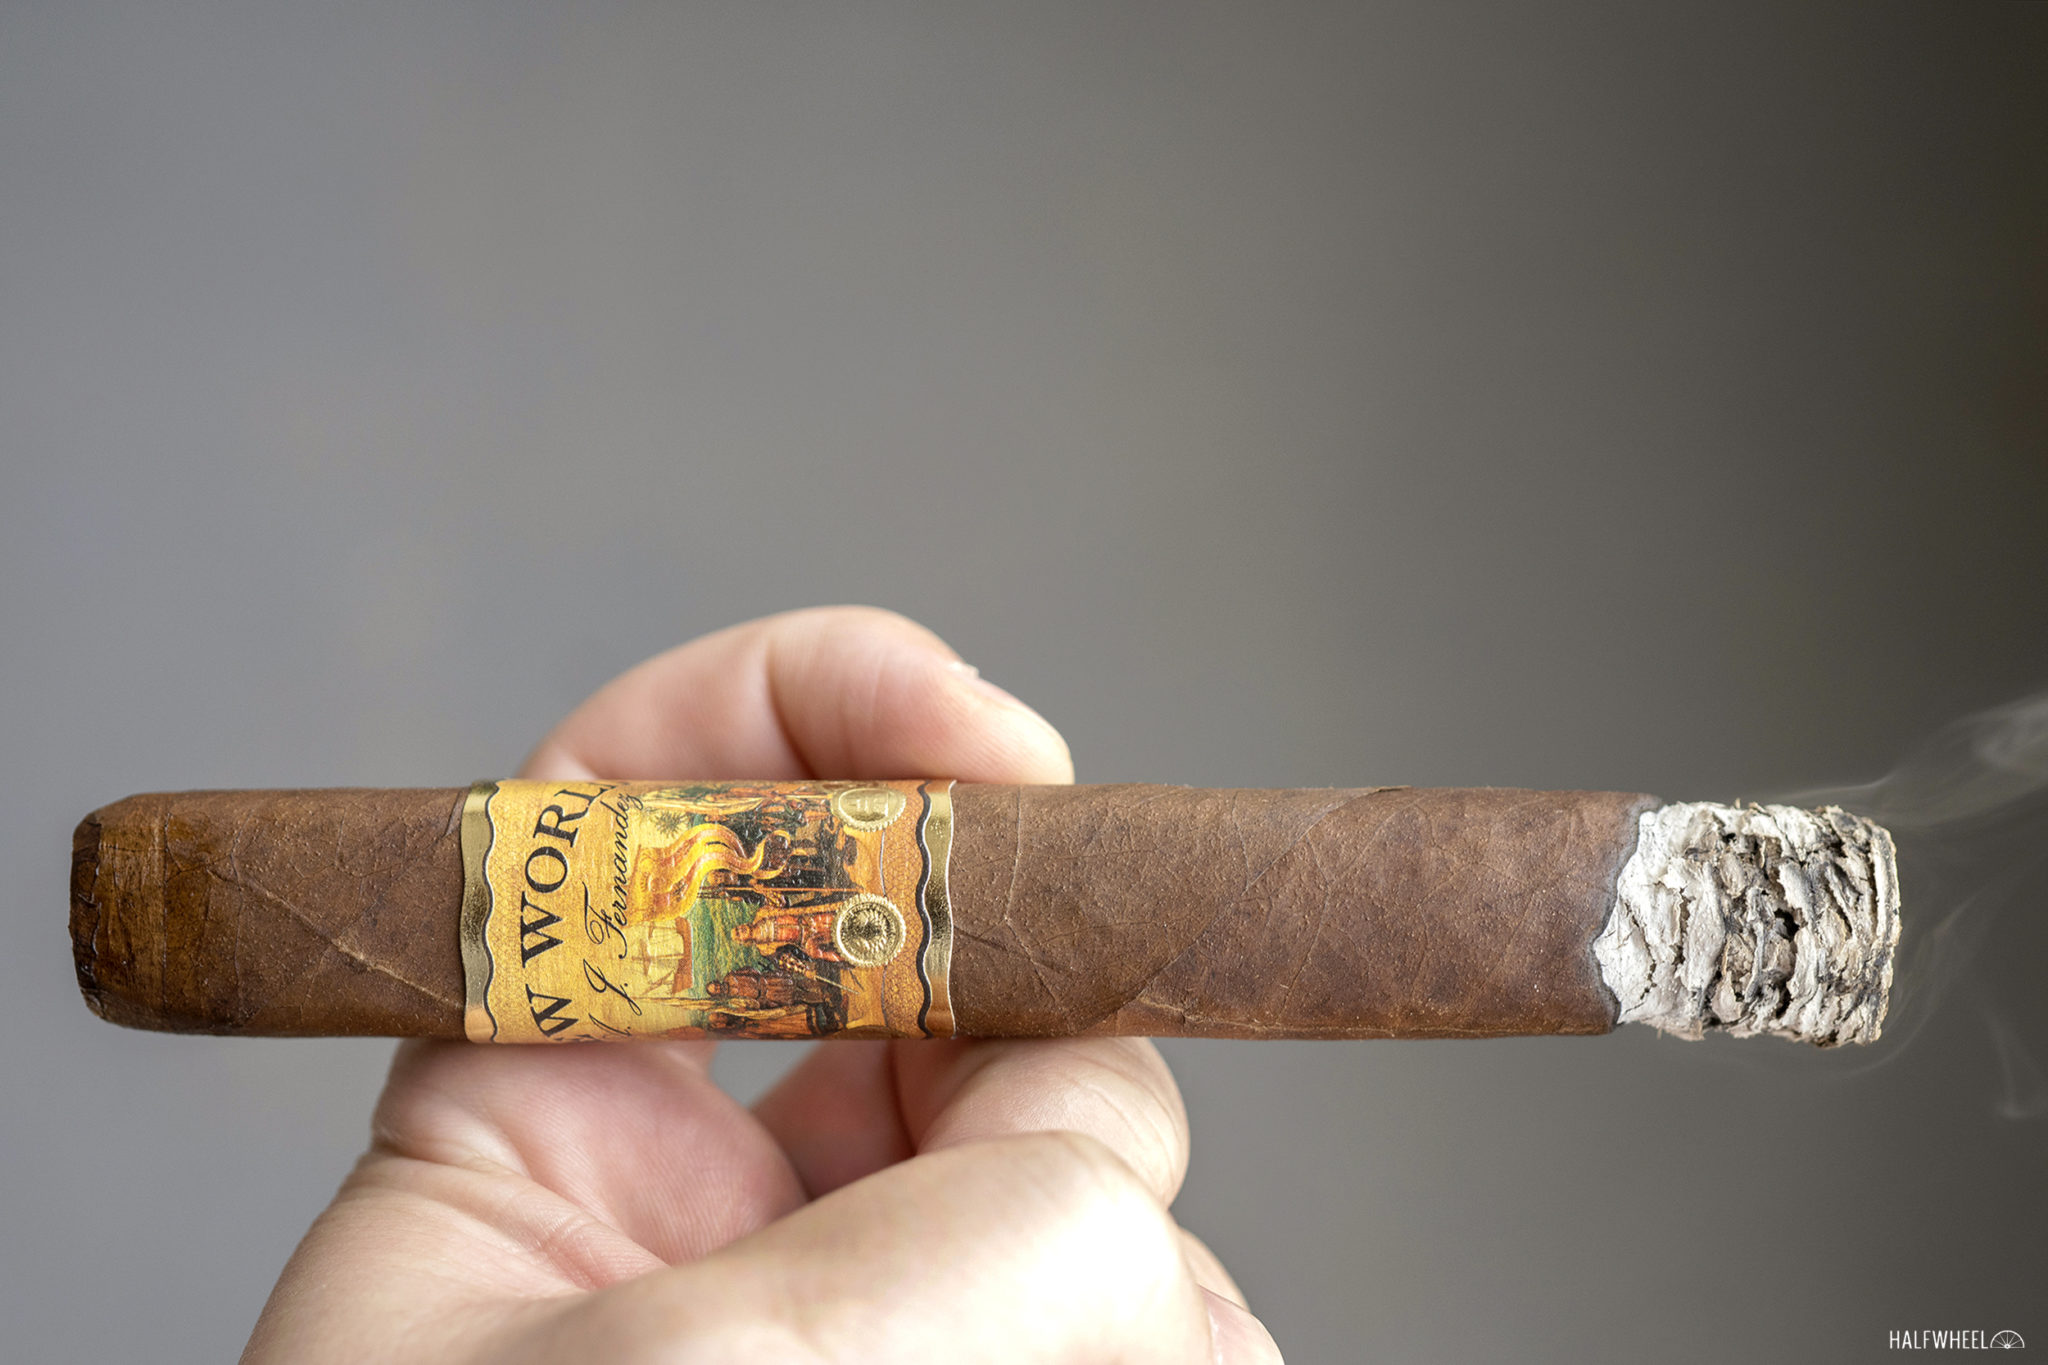 New World Dorado – Cigar Thief - Premium & Domestic Cigars